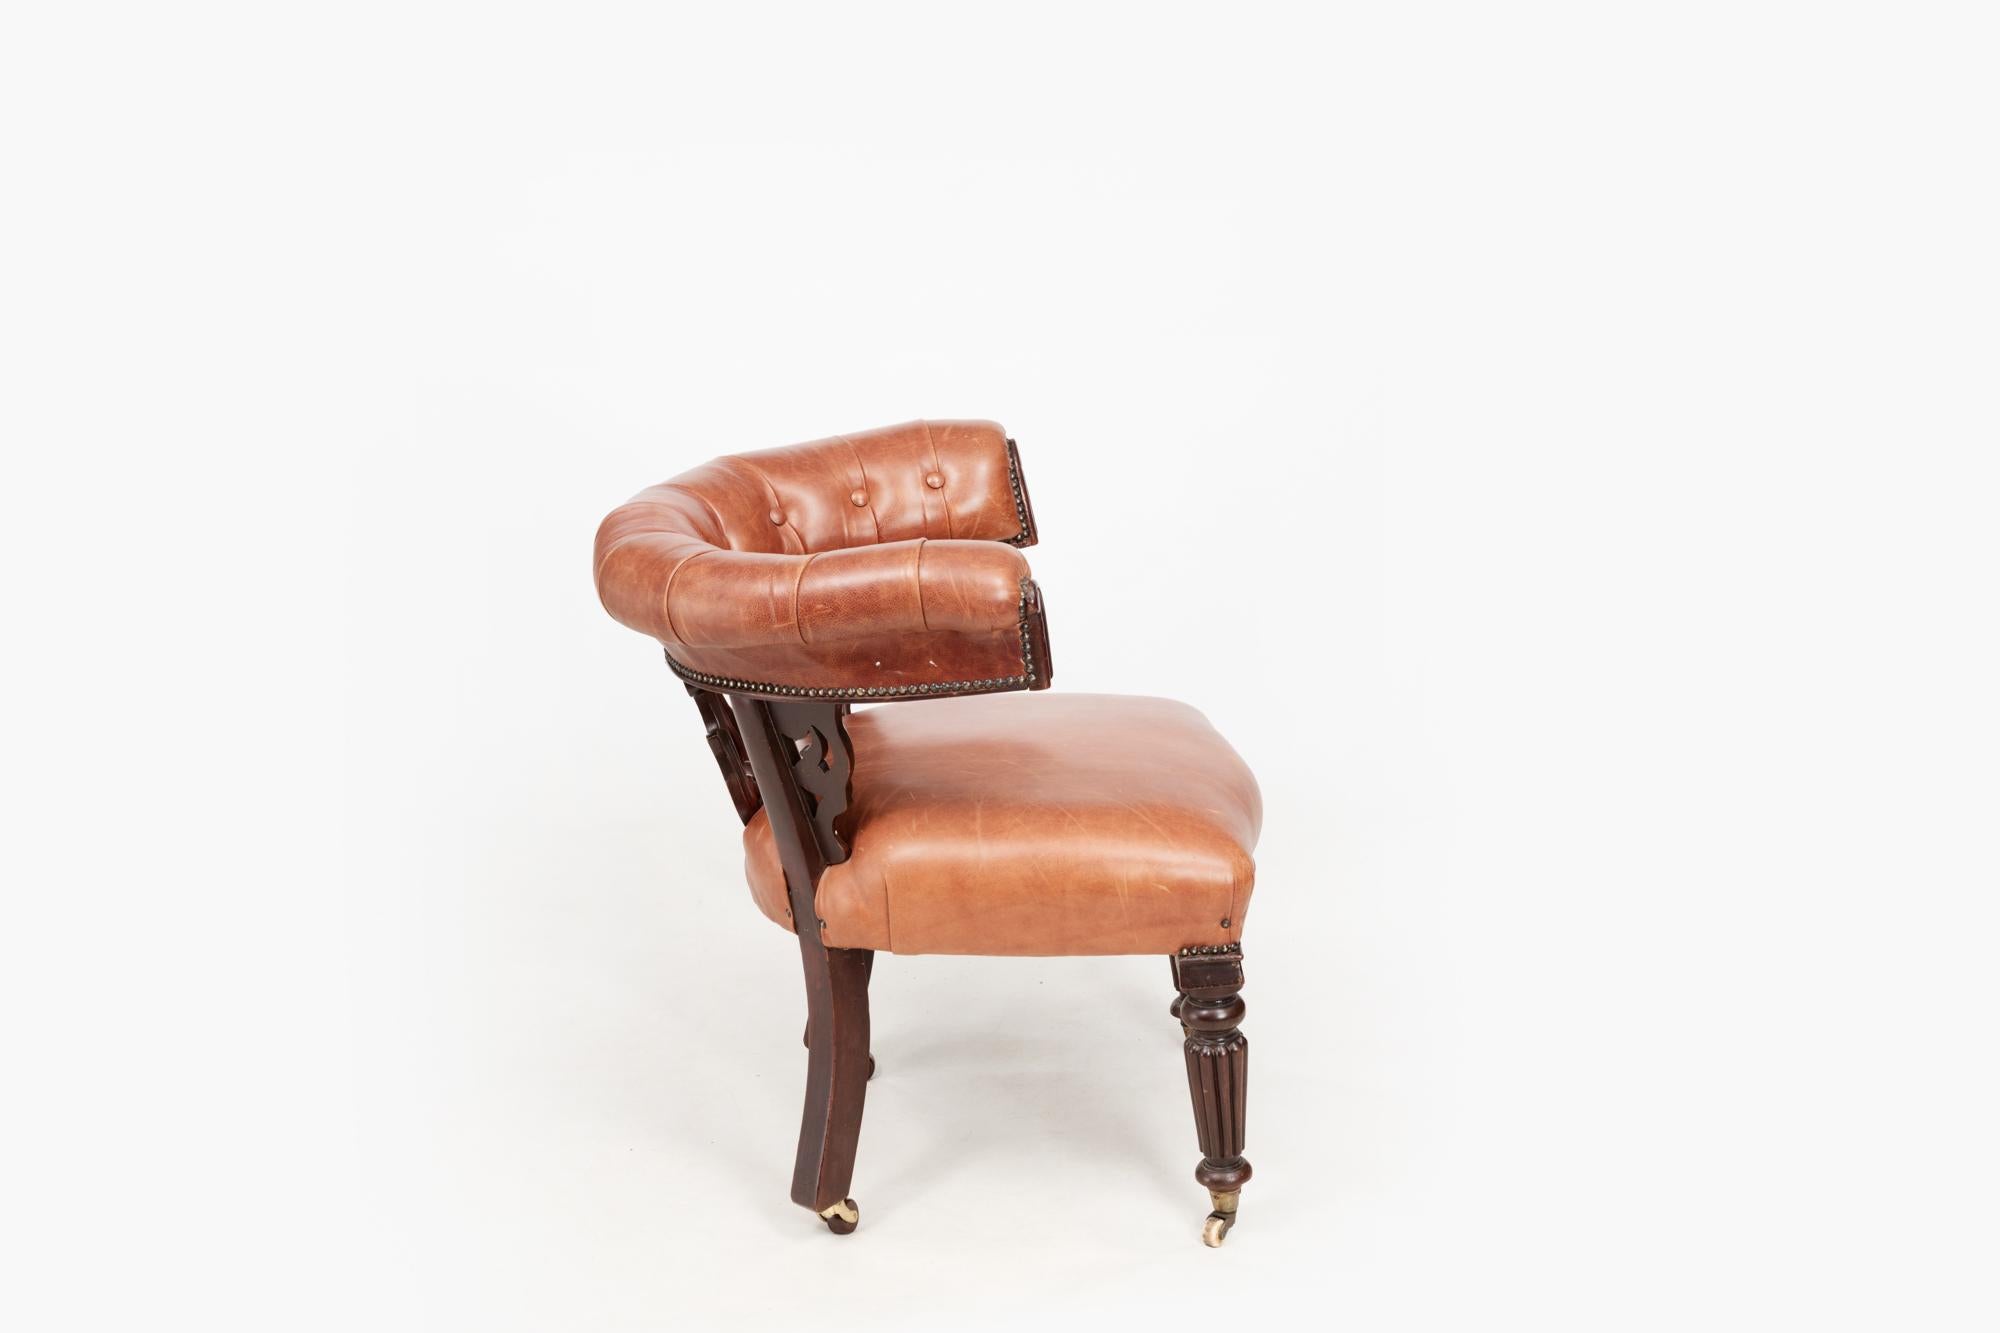 Chaise Windsor William IV en acajou du 19e siècle. Cette chaise de bureau à dossier arrondi a été restaurée avec une assise et une traverse garnies de boutons en cuir fauve. Le dosseret sculpté présente des détails en forme de C.C. et la pièce